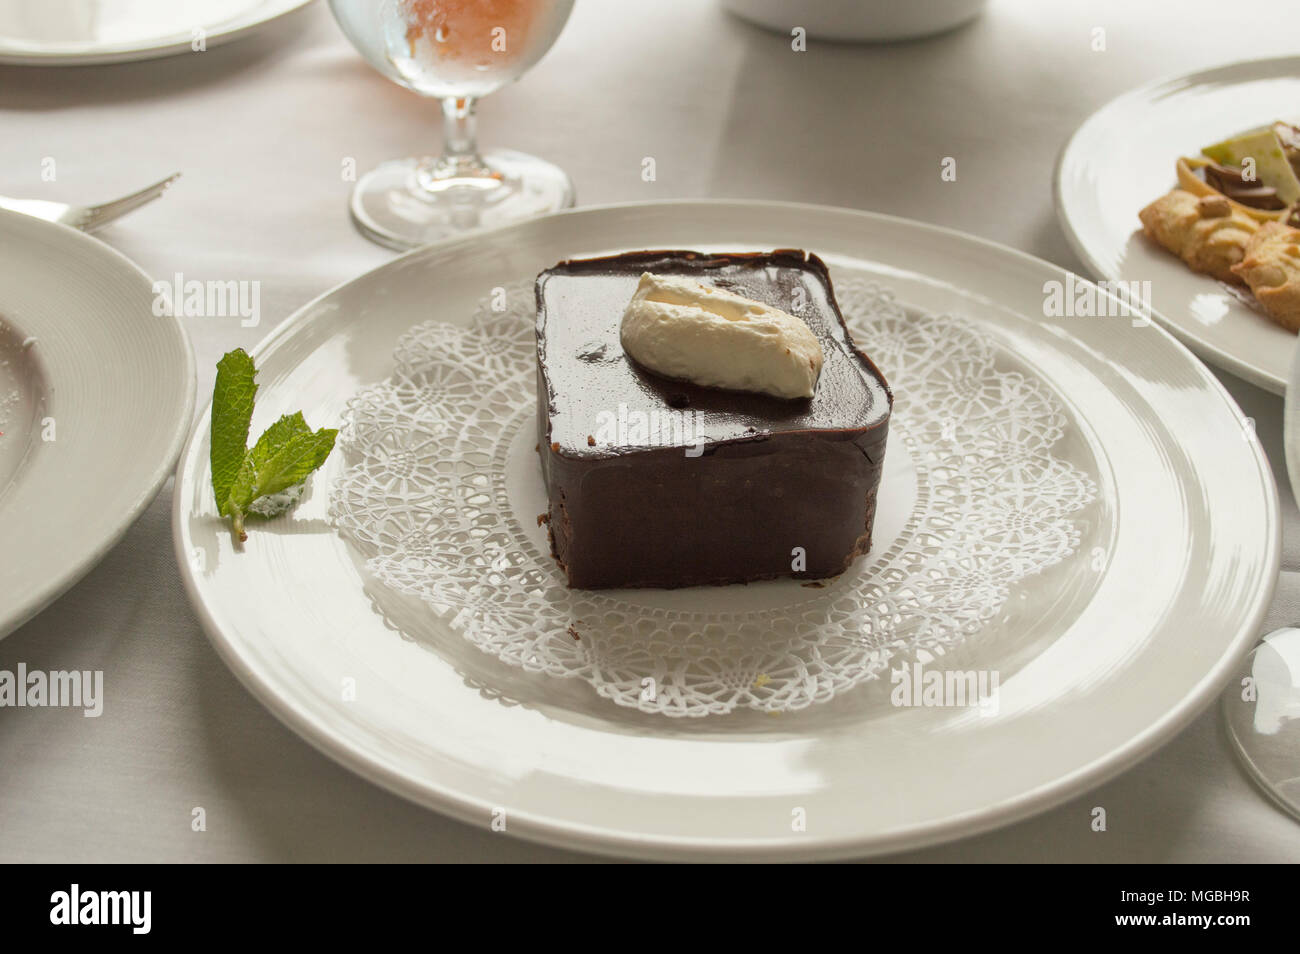 Das Stück ein Mousse au chocolat Torte auf einem ausgefallenen Platte gekrönt mit frischer Schlagsahne Stockfoto